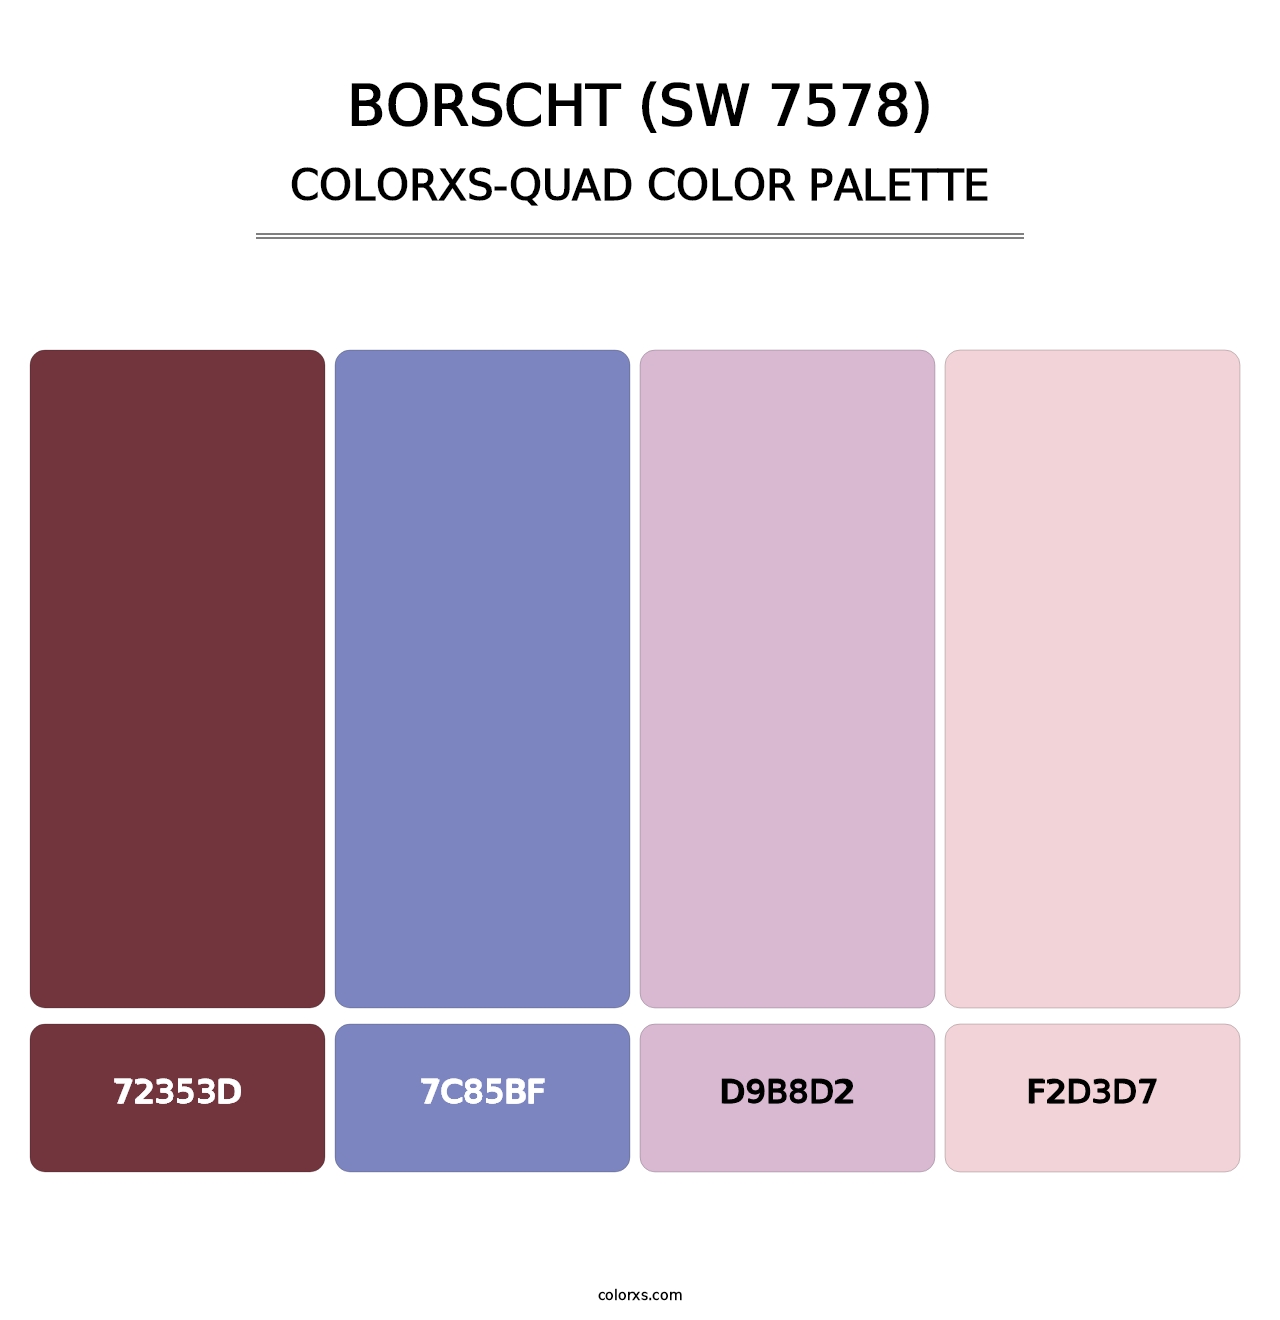 Borscht (SW 7578) - Colorxs Quad Palette